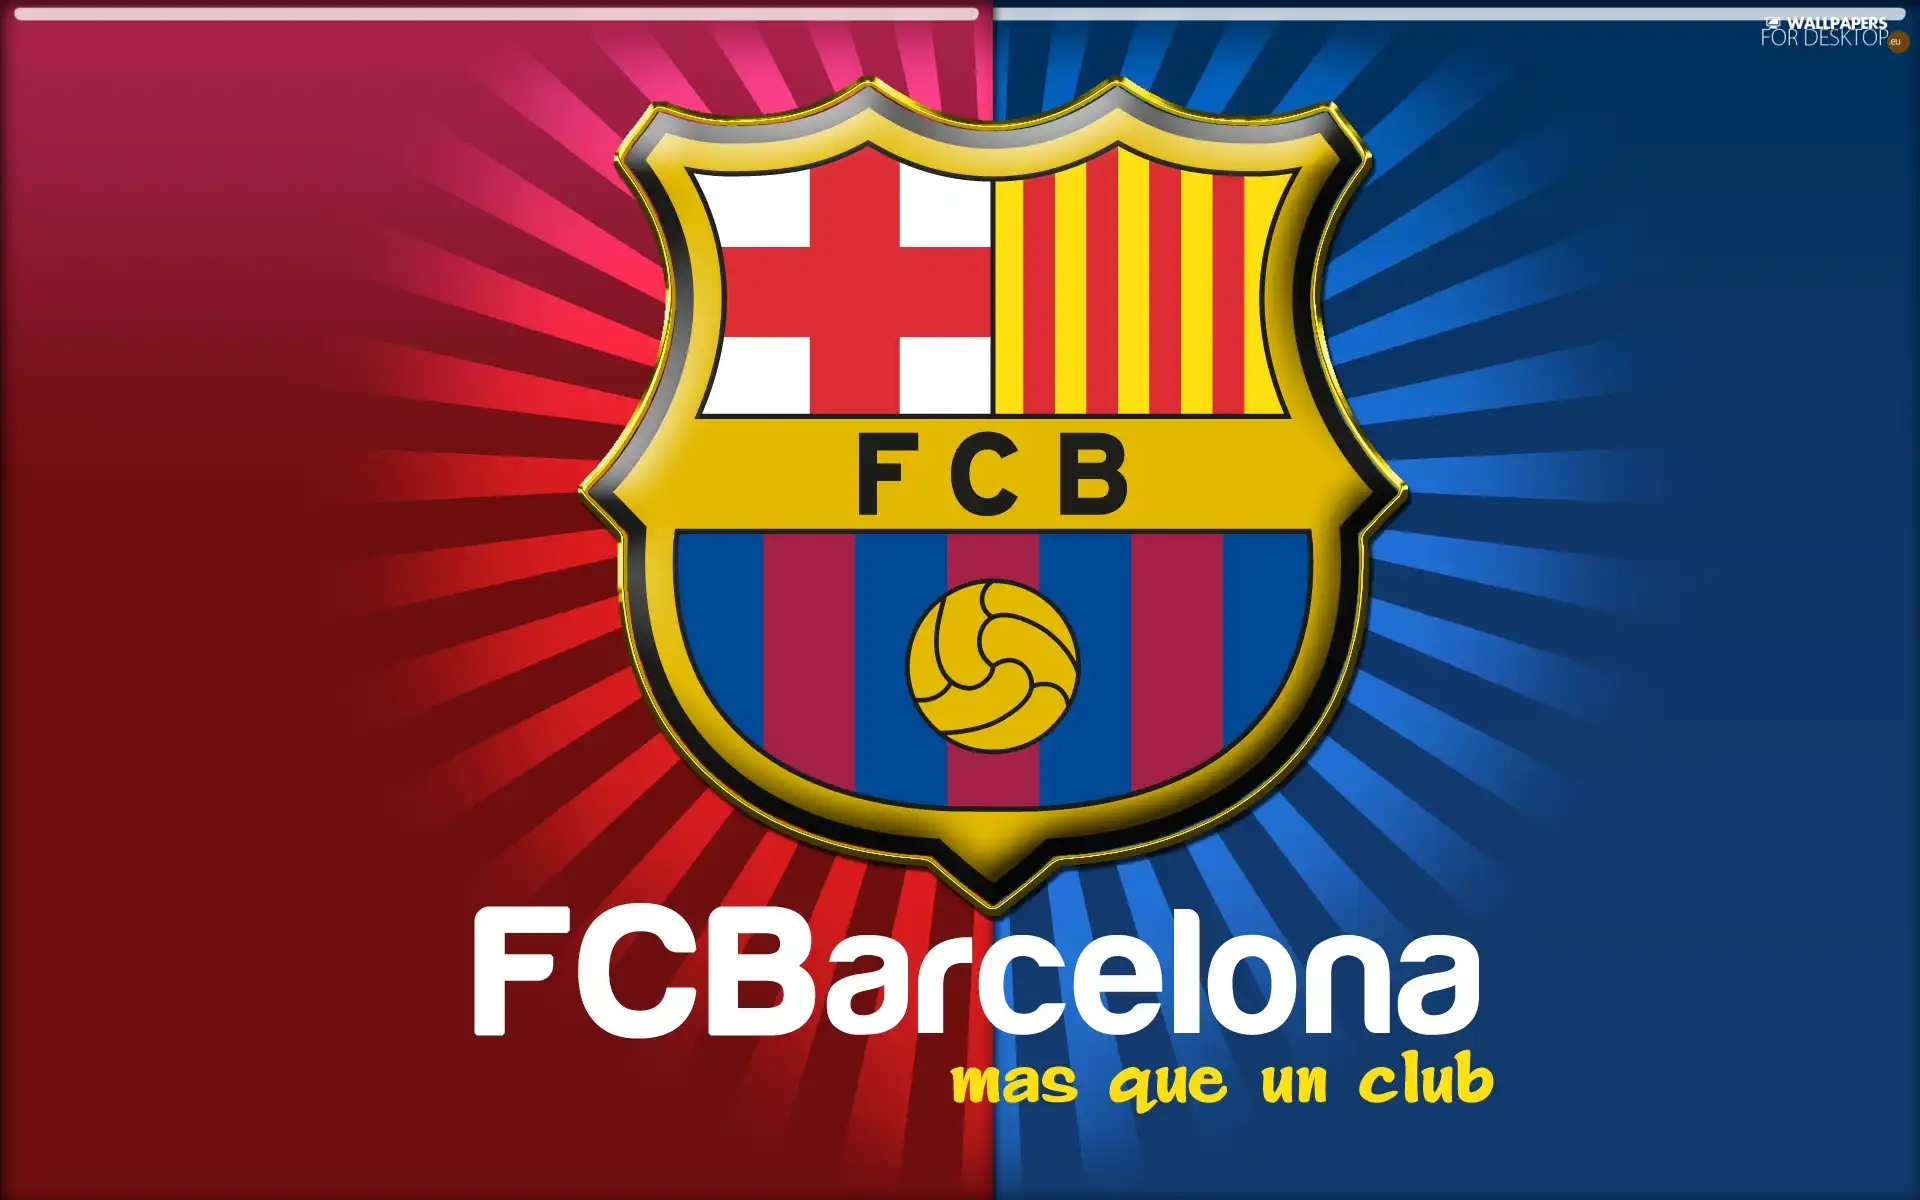 FC Barcelona, escutcheon